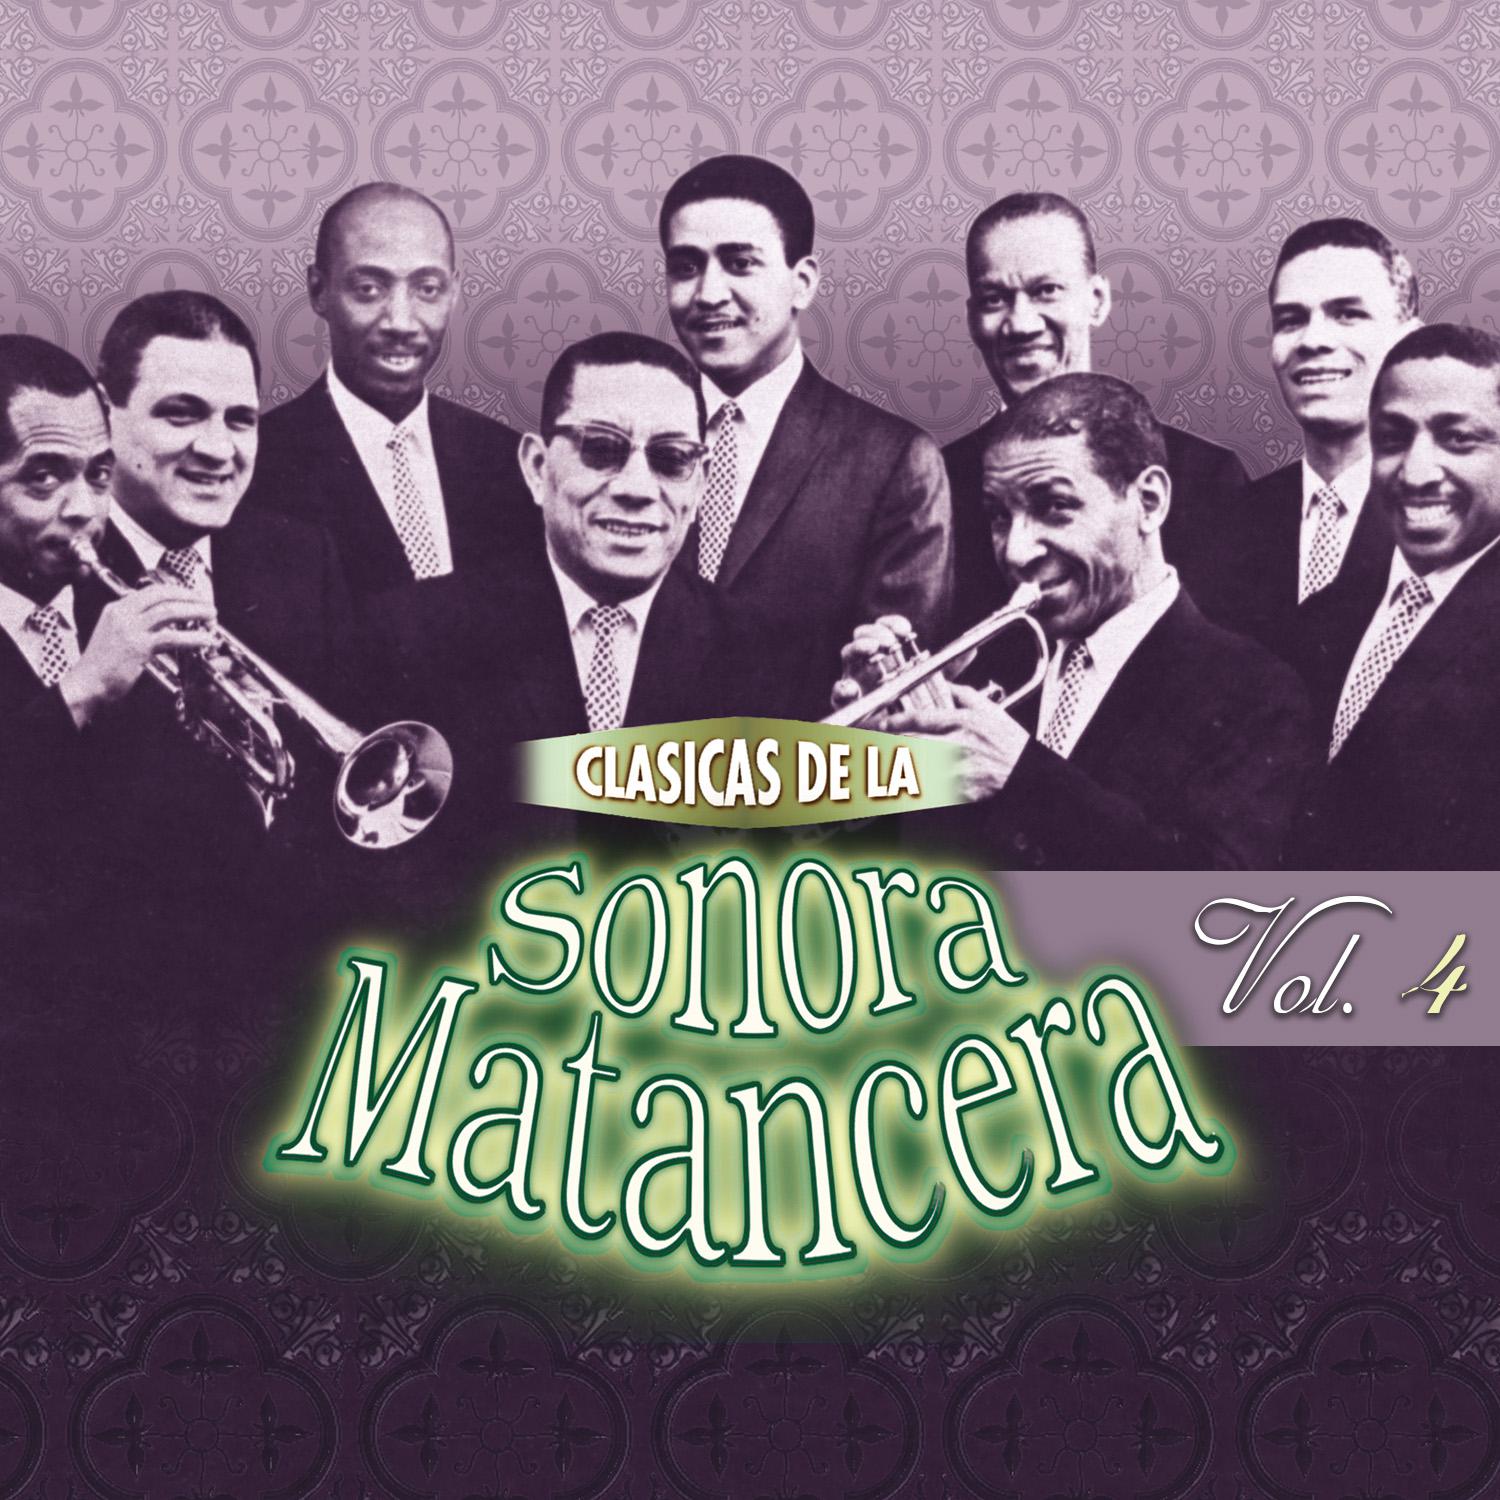 Cla sicas de la Sonora Matancera Vol. 4